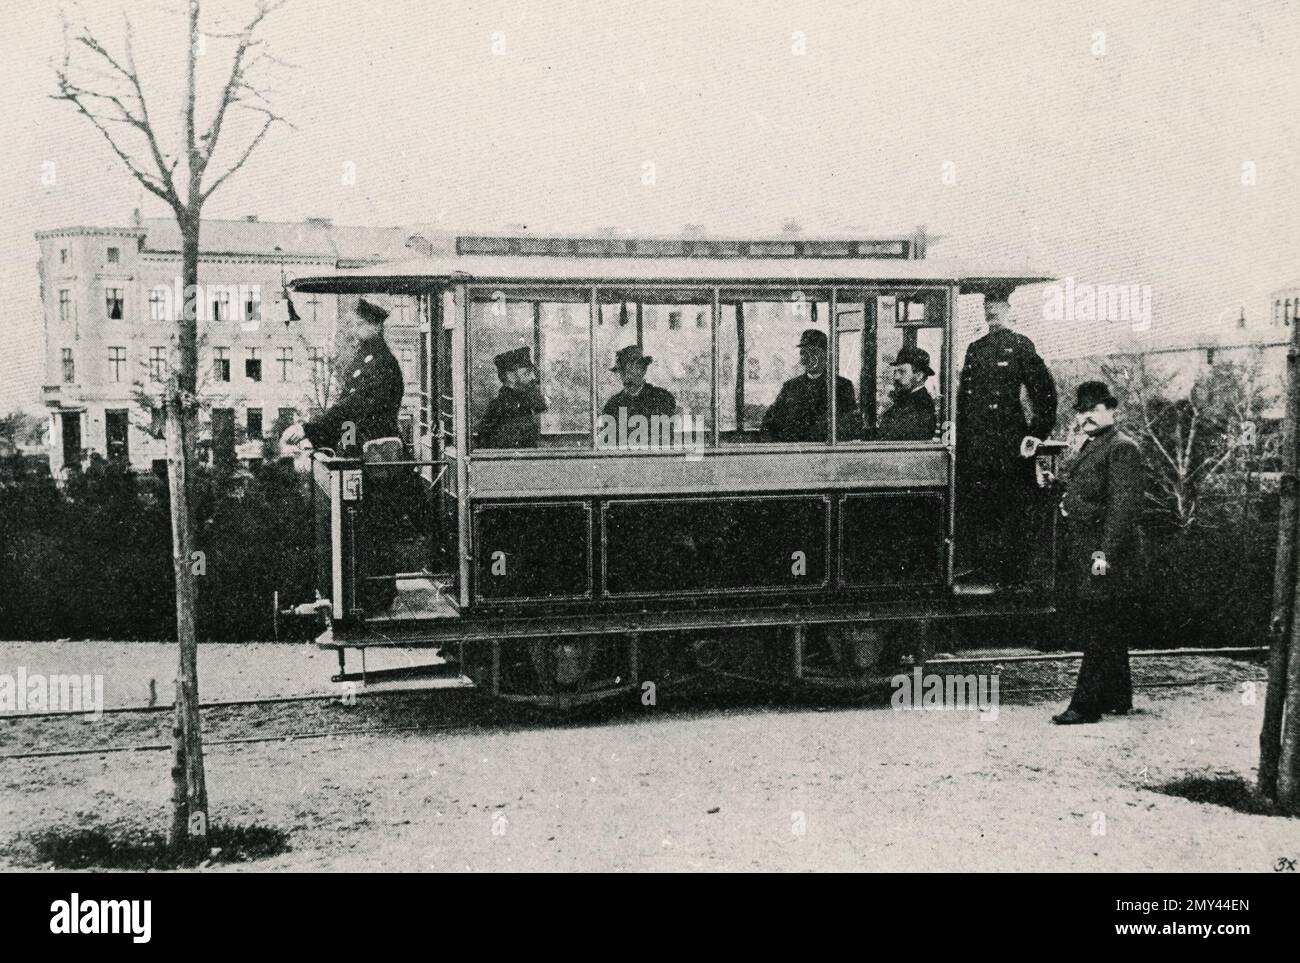 Die erste elektrische Straßenbahn Gross-Lichterfelde, gebaut von Werner Siemens und Halske, Berlin, 1881 Stockfoto